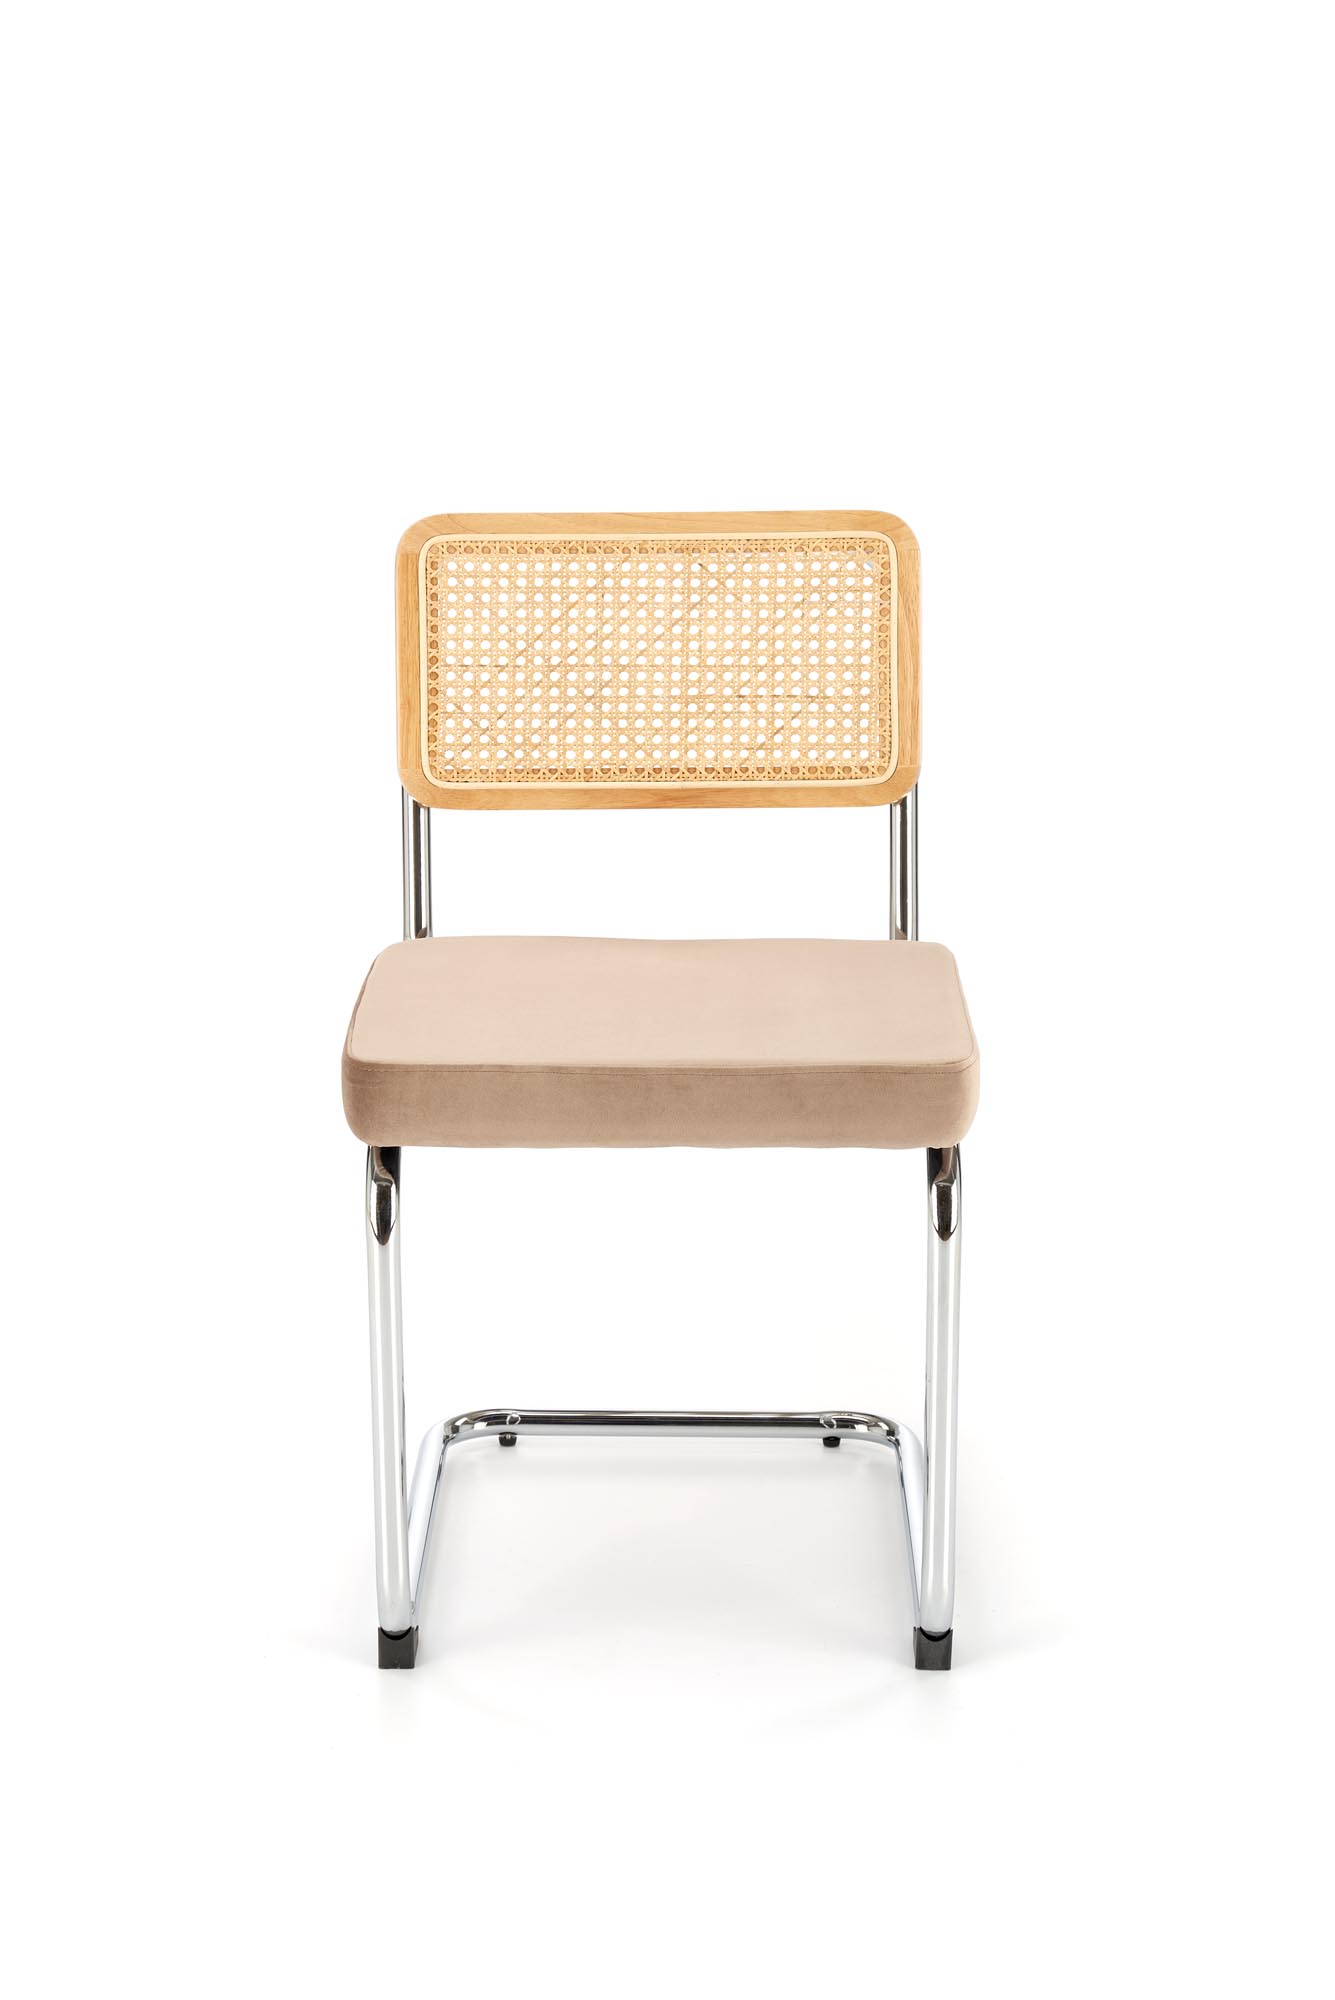 Krzesło metalowe z tapicerowanym siedziskiem K504 - beżowy / naturalny krzesło metalowe z tapicerowanym siedziskiem k504 - beżowy / naturalny